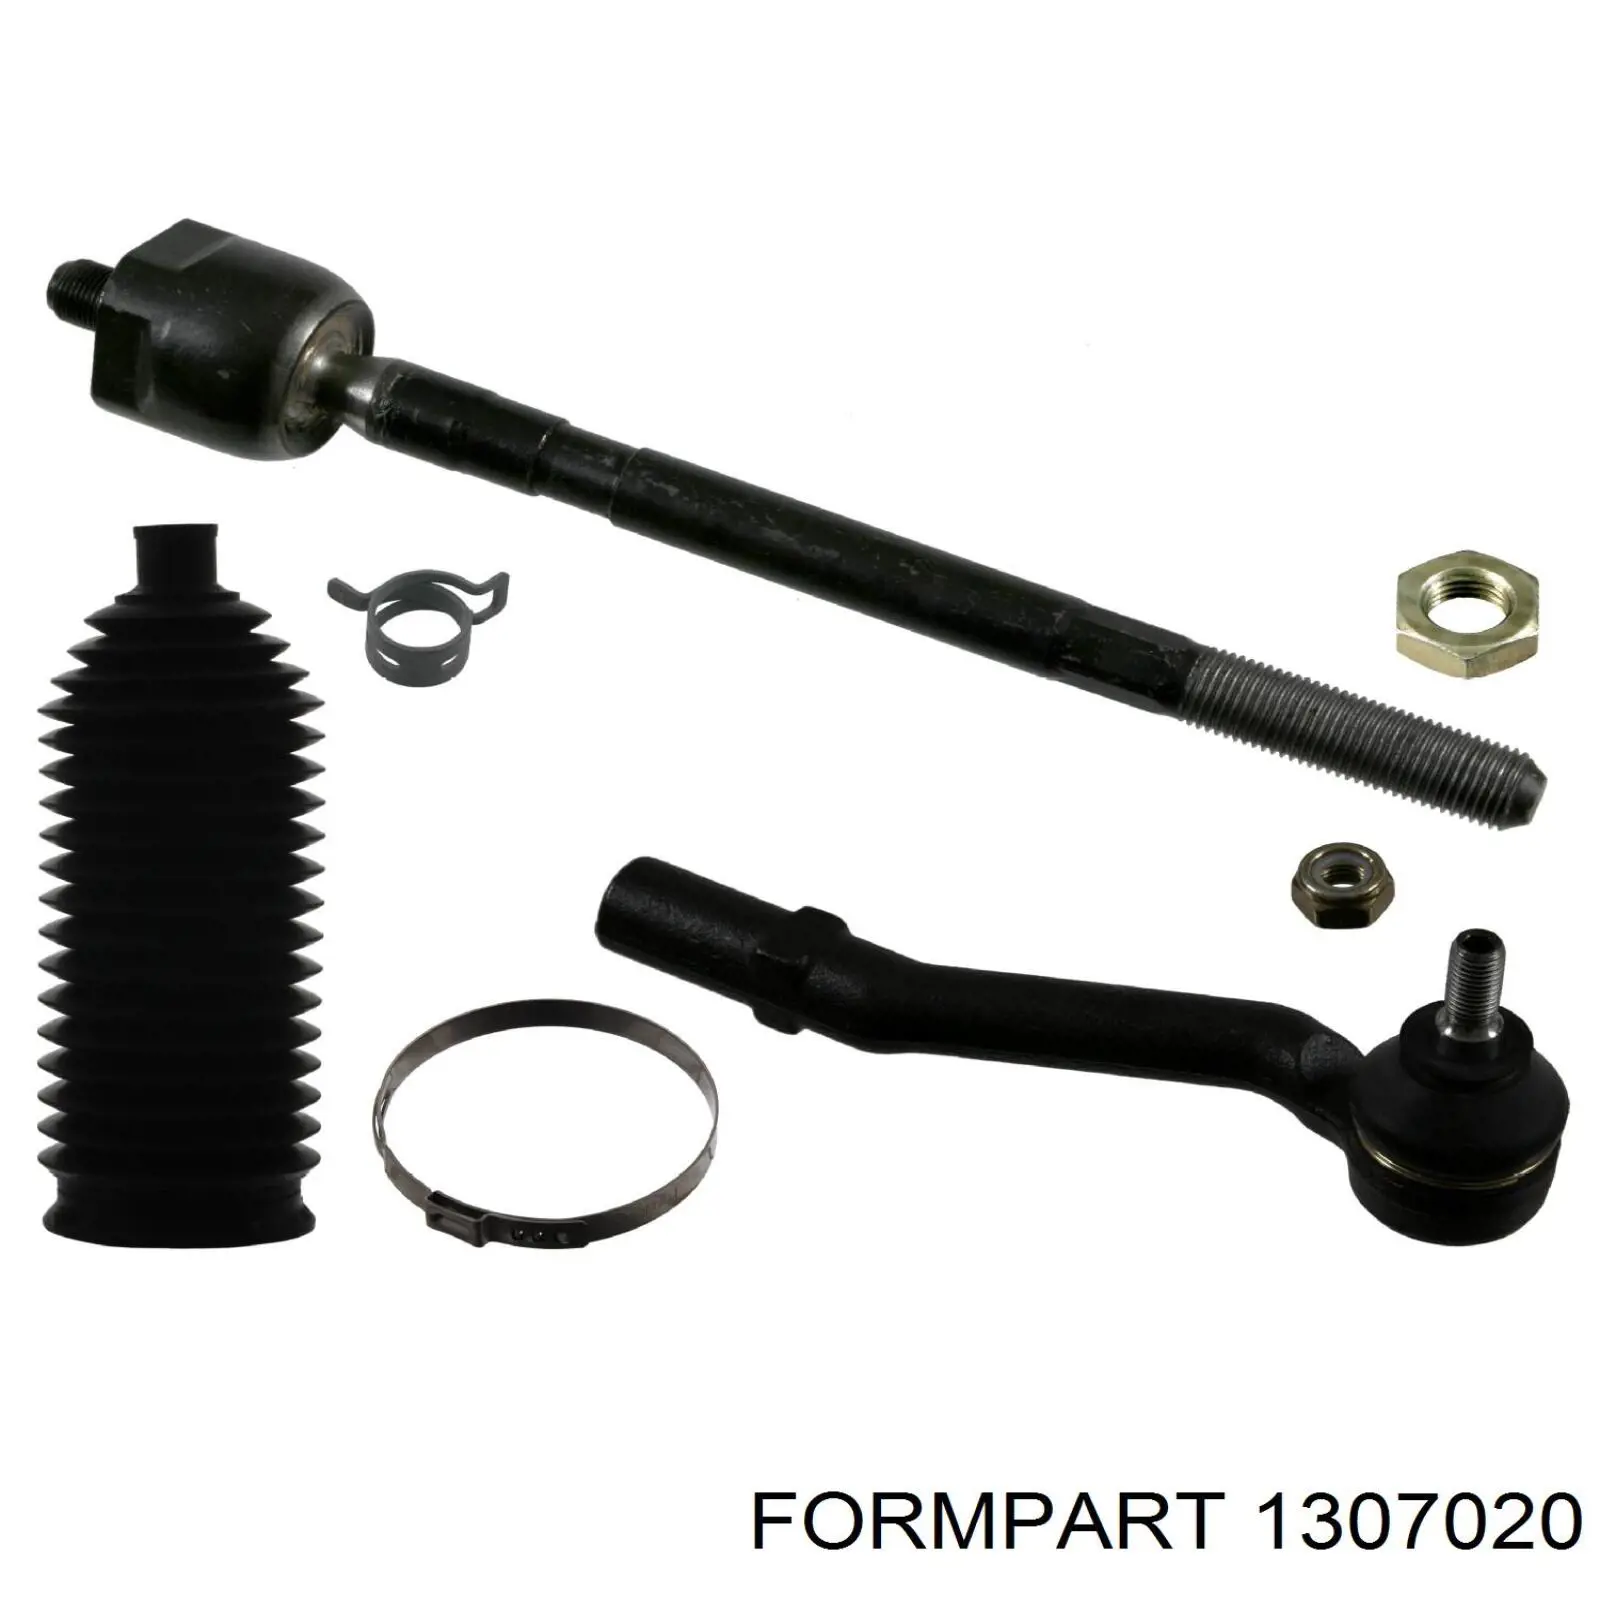 1307020 Formpart/Otoform barra de acoplamiento